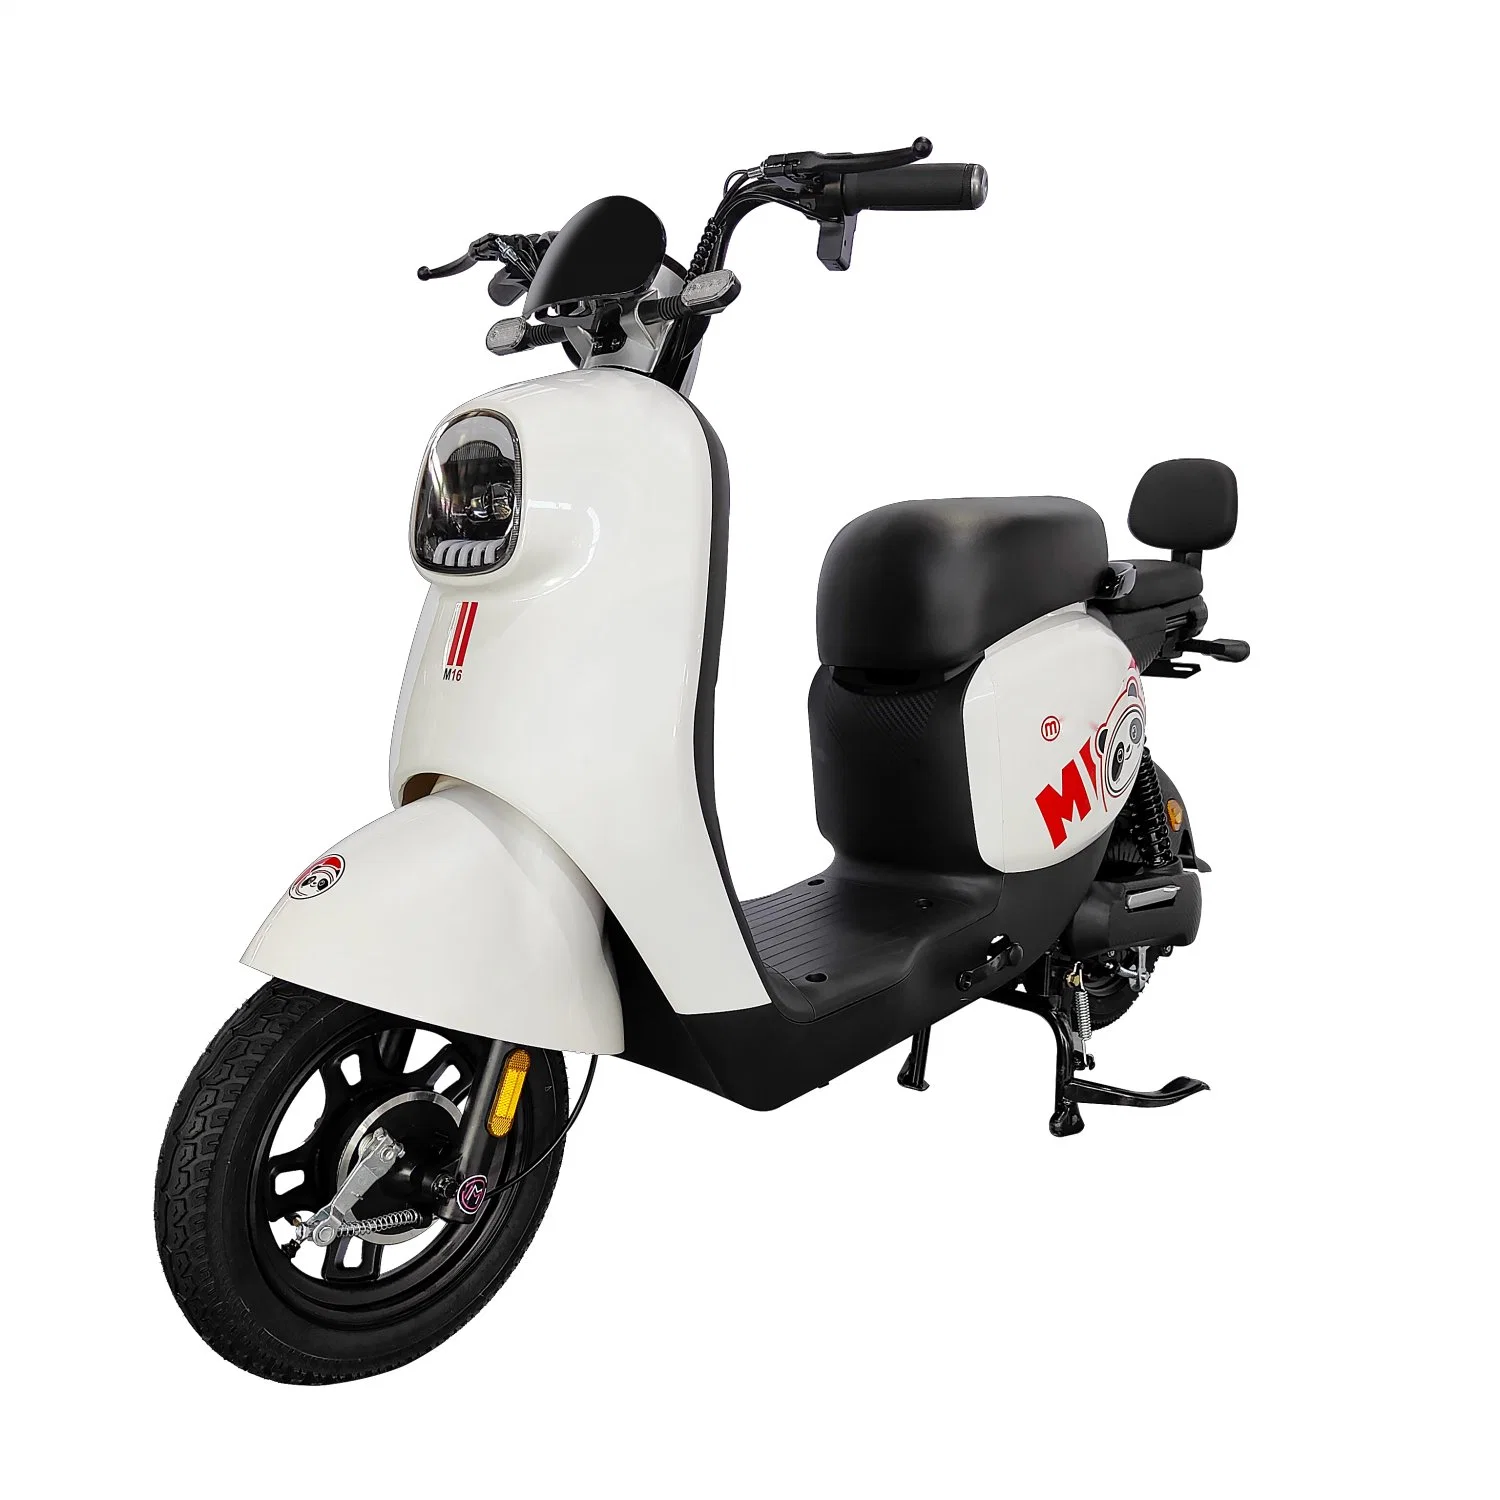 Willstar Ty258 High-Power Elektro Moped/Elektro Fahrrad mit 48V20ah Chilwee Blei-Säure Batterie